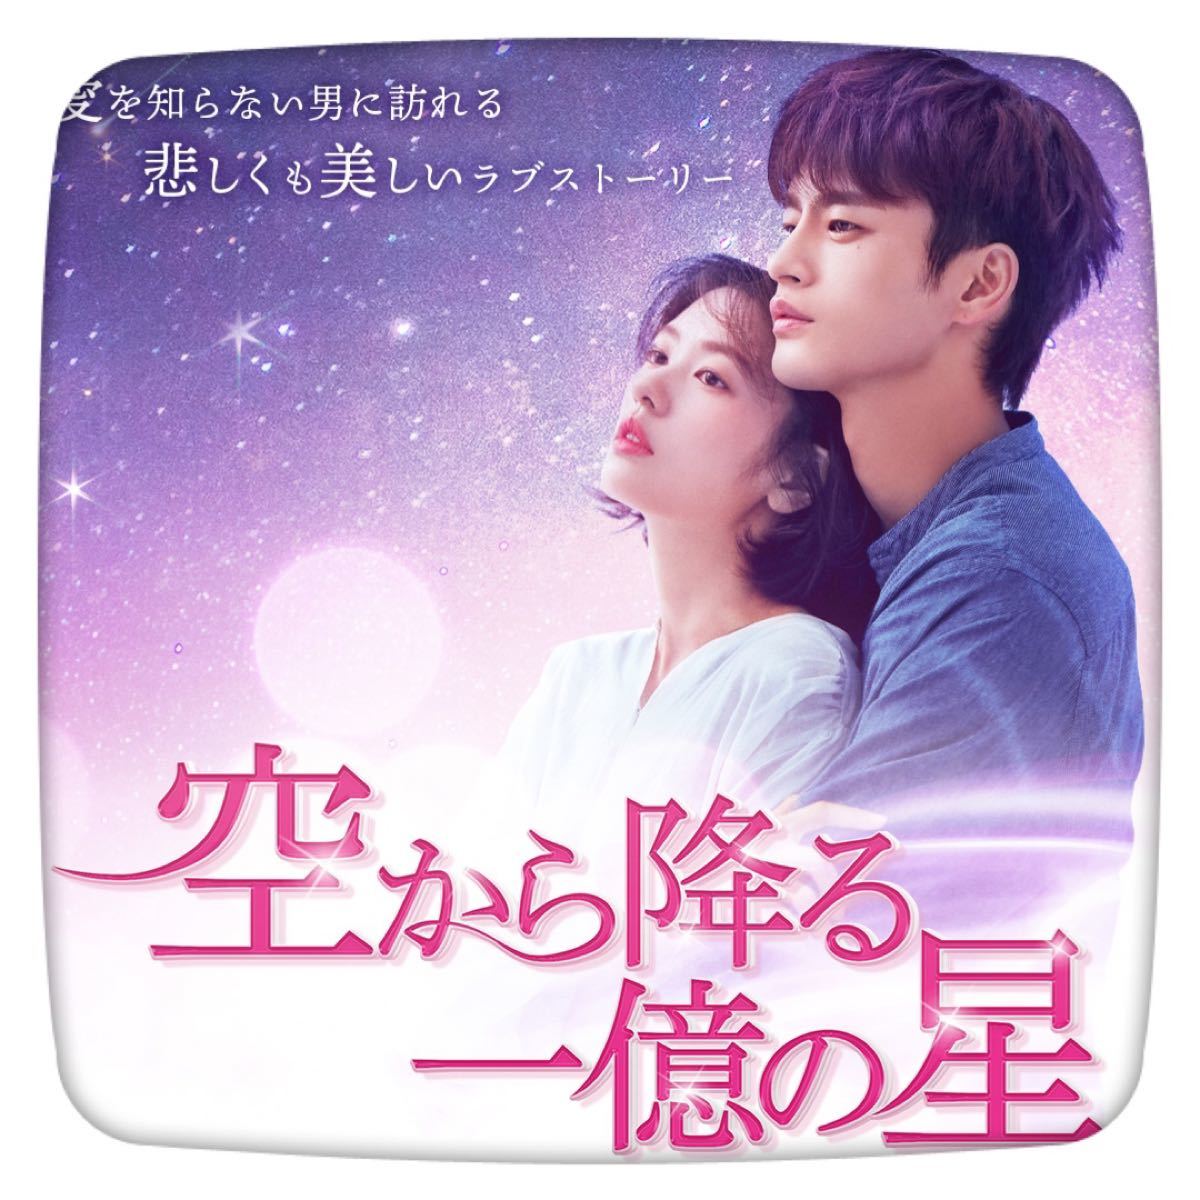 【空から降る一億の星】Blu-ray 韓国ドラマ 韓流